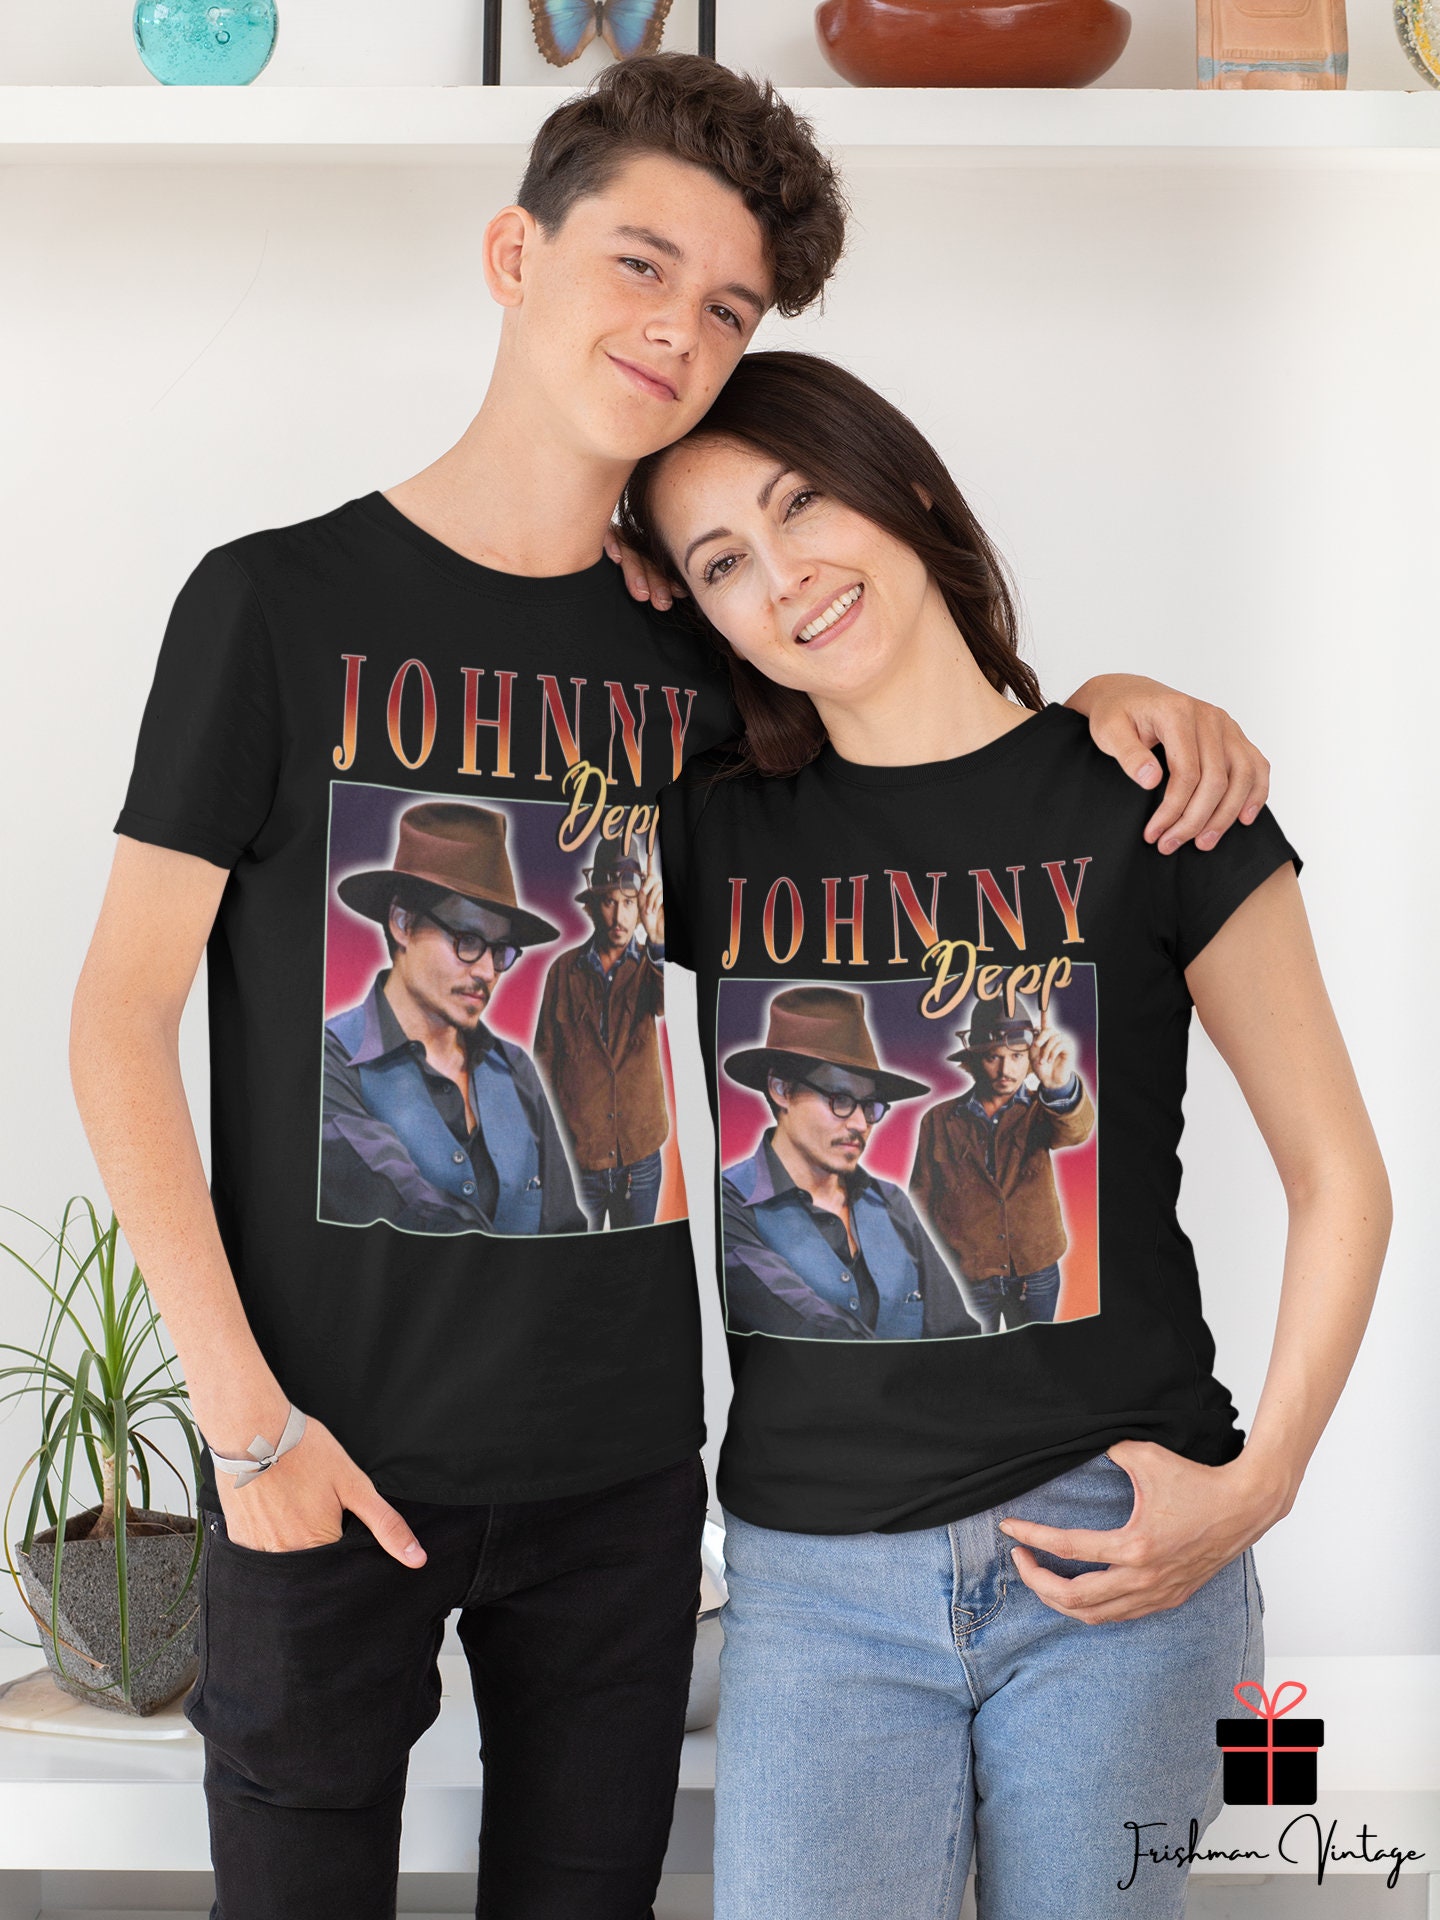 Johnny Depp Homage T-shirt Johnny Depp Fan Shirt Johnny Depp - Etsy